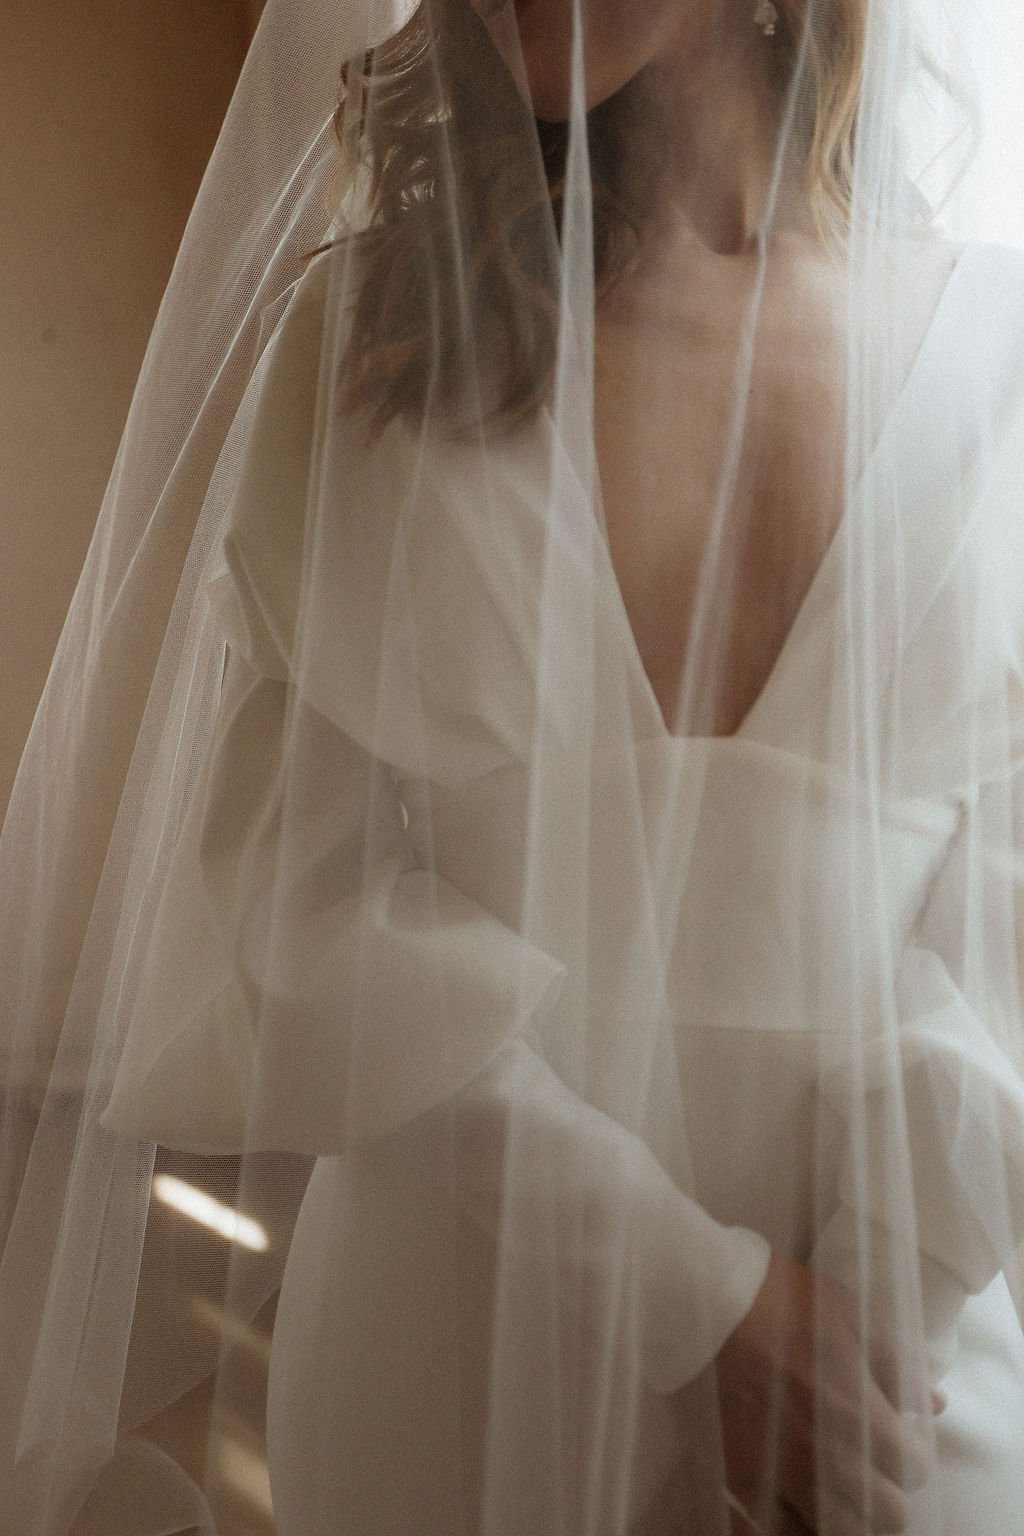 bride standing near window with viel 